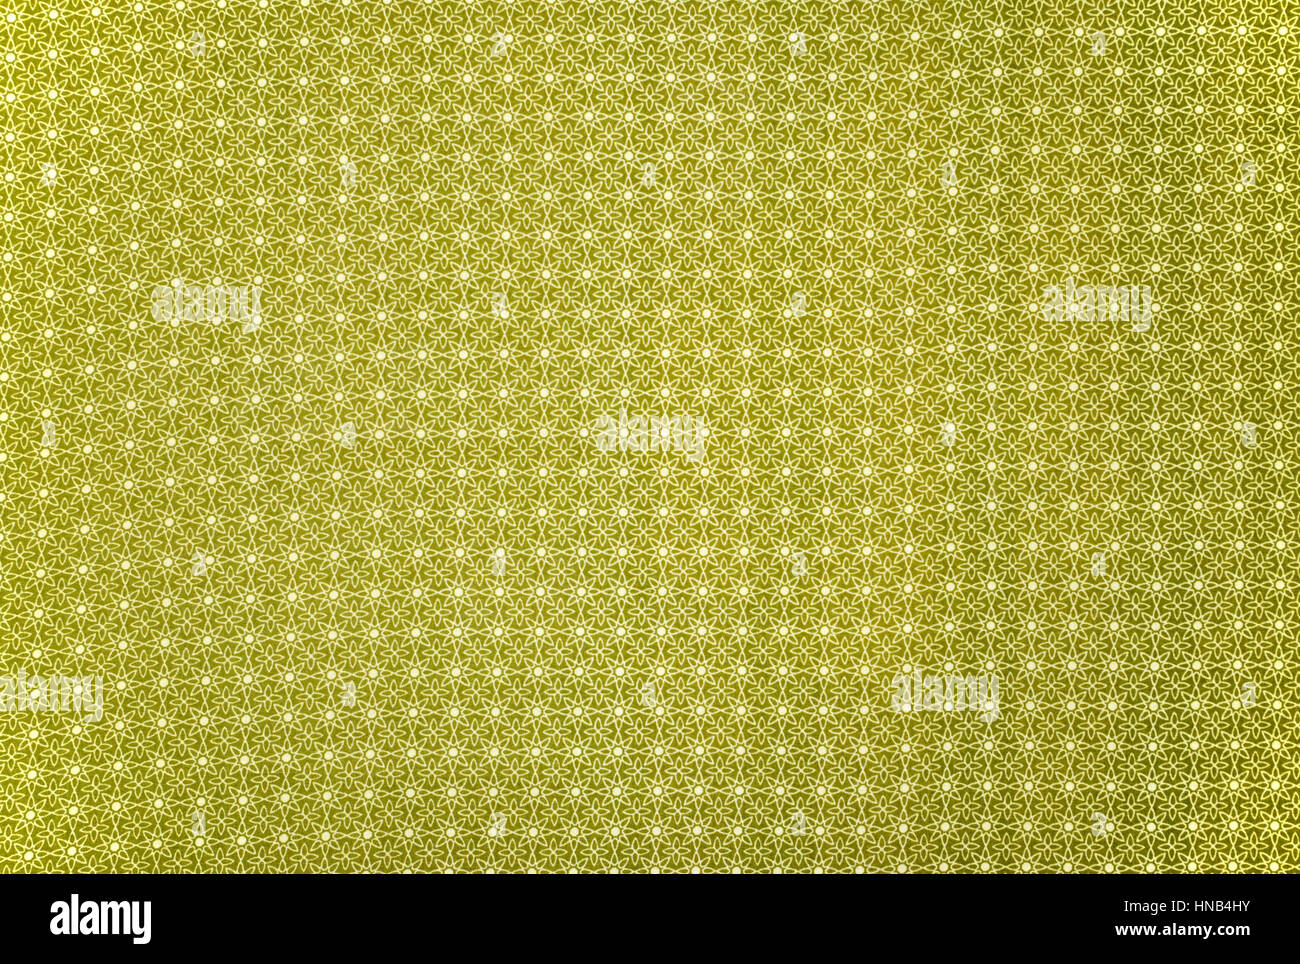 Olivgrün wiederholt lineare Blumenmuster Tuch Hintergrund gemustert Stockfoto